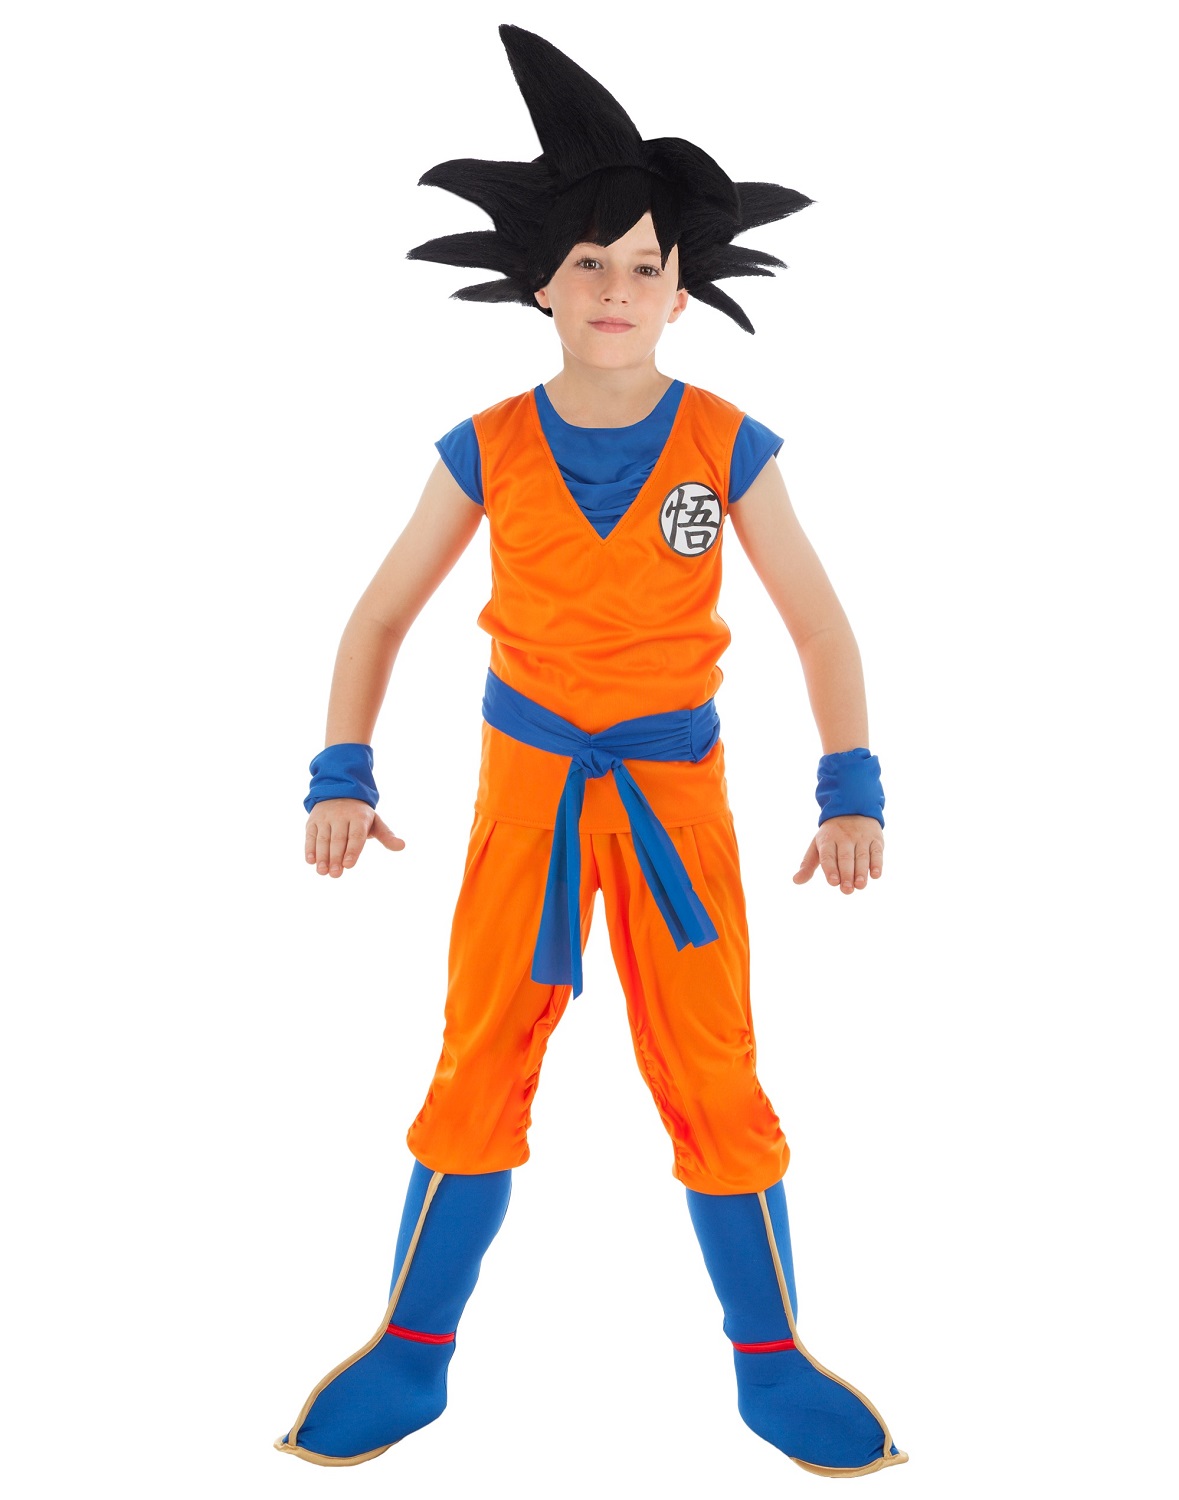 Déguisement Goku Saiyan Dragon Ball Z 128 cm - Chaks - Costume enfant